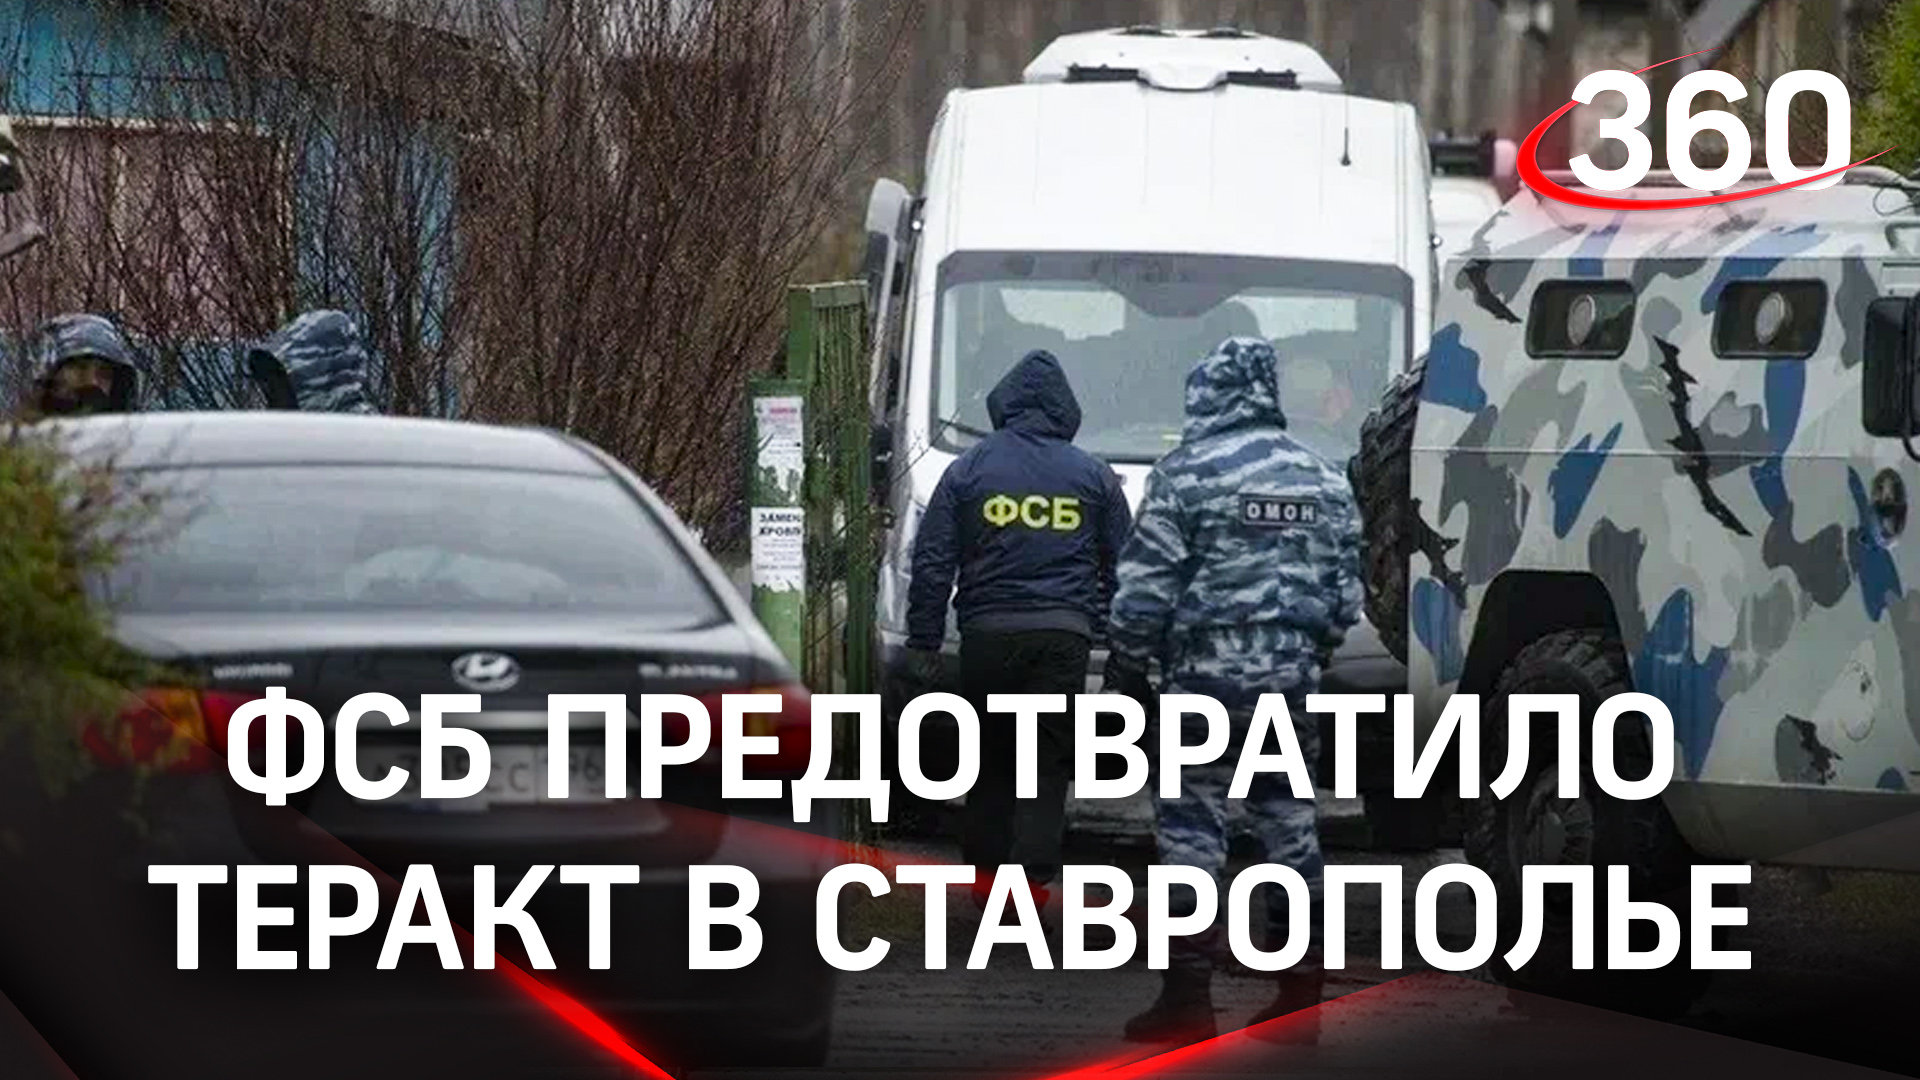 Новости 1 канала про теракт. Предотвращение теракта в Ставропольском крае.